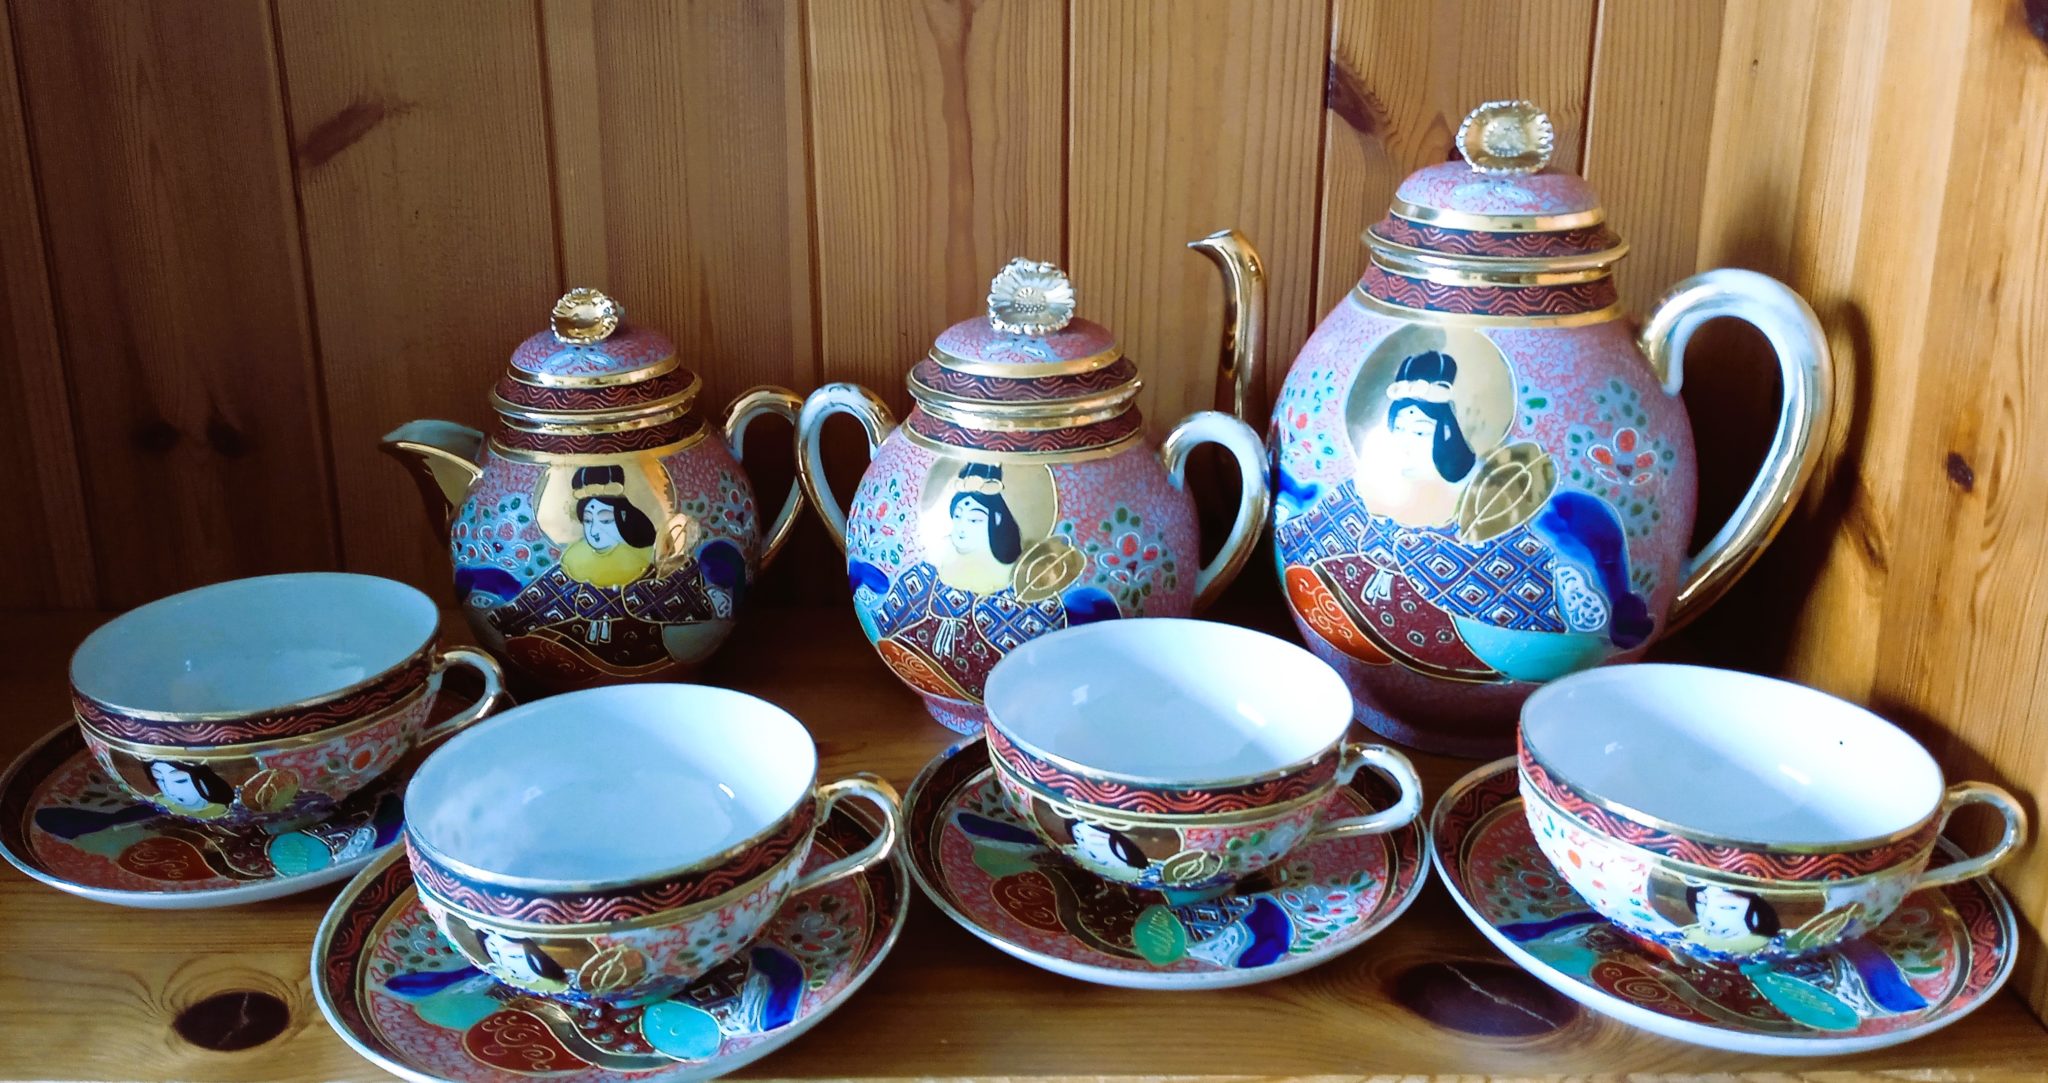 Service à thé japonais composé de 4 tasses et leurs sous tasses, d'un sucrier, d'un pot à lait, et d'une théière au motif geisha, dans les tons bleu, rose, rouge, doré